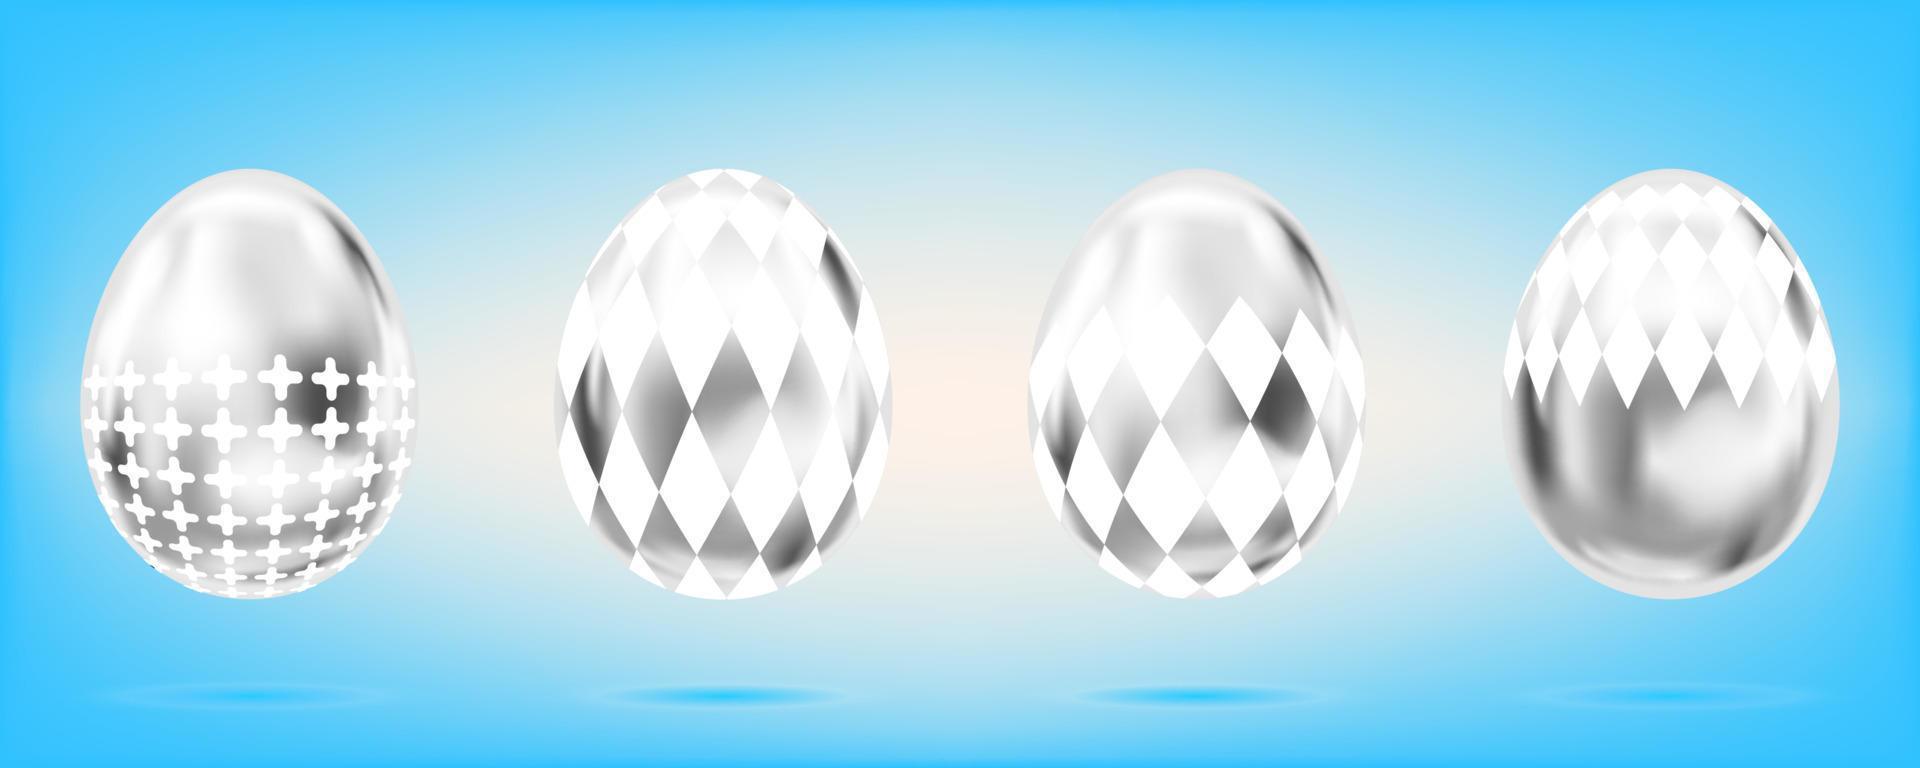 cuatro huevos de plata sobre el fondo azul cielo. objetos aislados para la decoración de Pascua. cruz y domino rum adornado vector